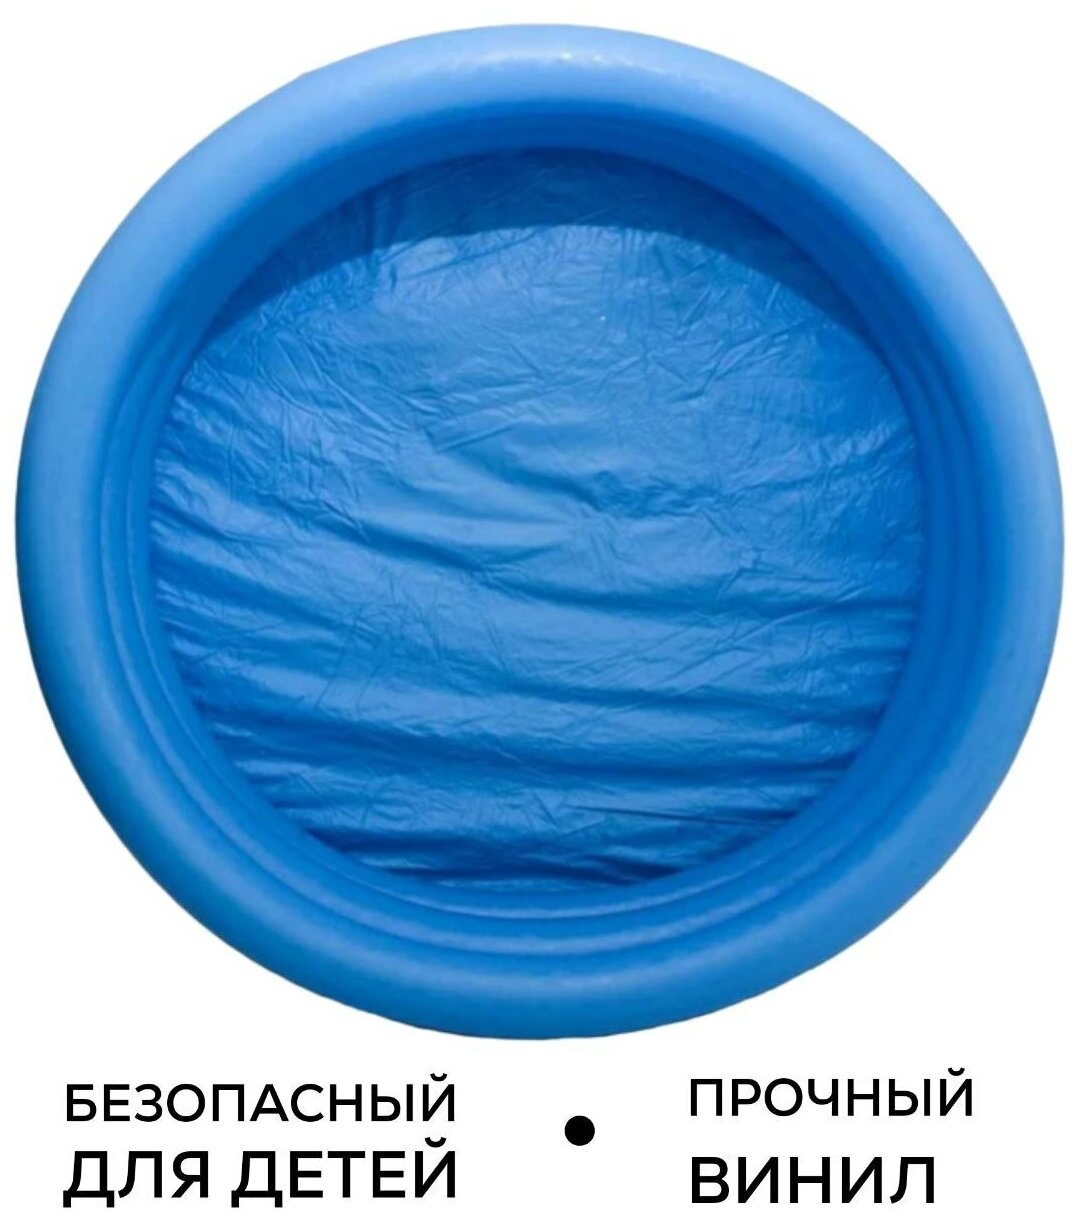 Intex / Бассейн детский надувной, не каркасный, для детей от 3х лет, 114х25см, 156 л